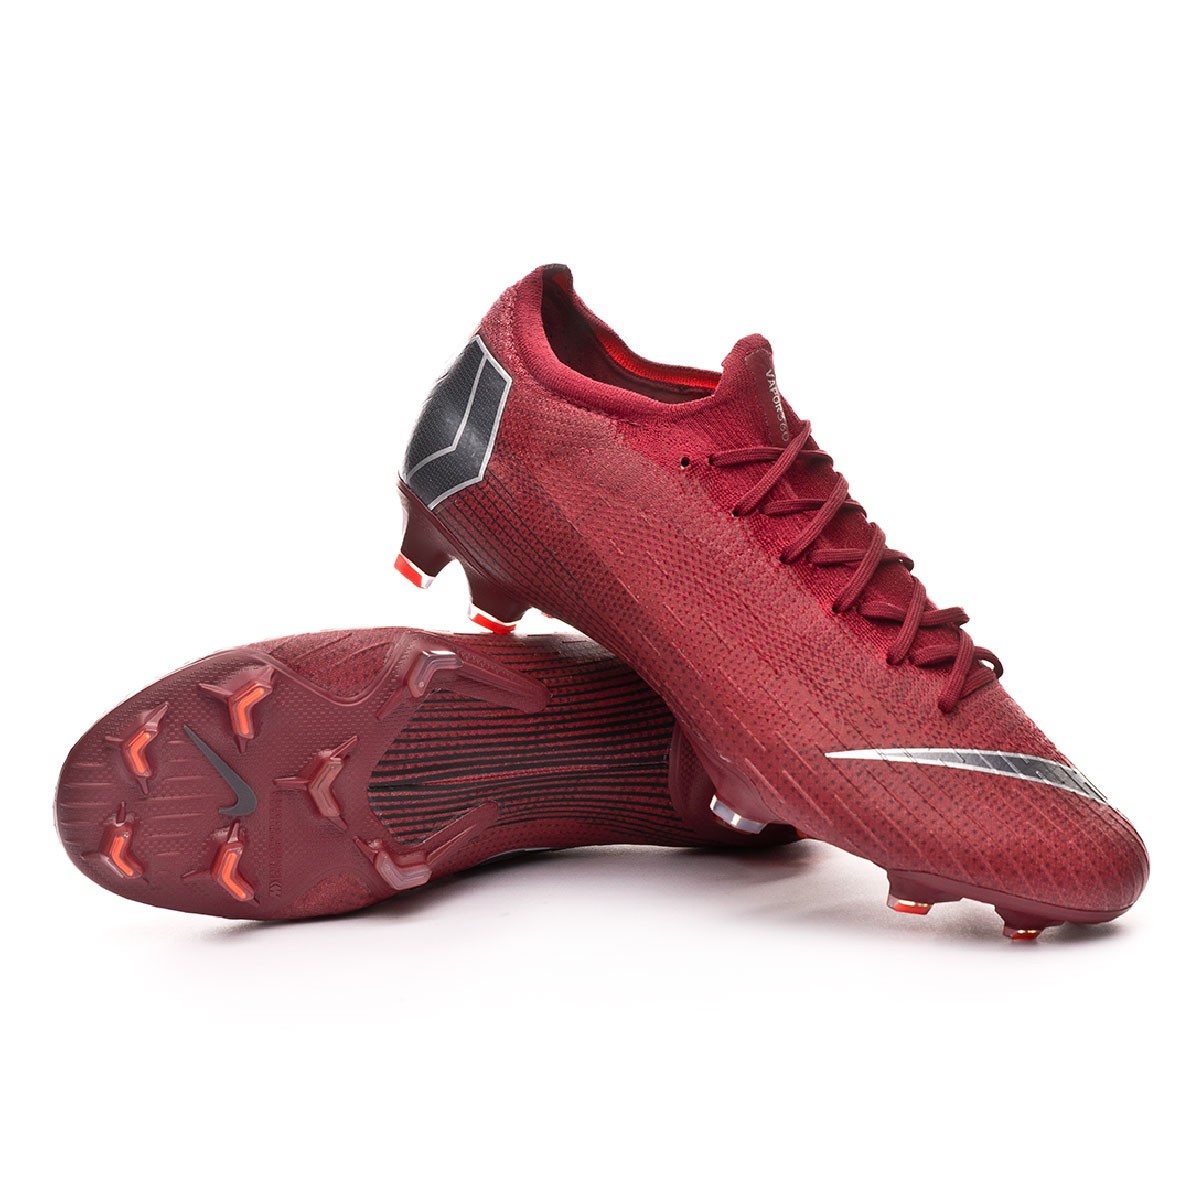 Zapatos de fútbol Nike Mercurial Vapor XII Elite FG Team red-Metallic dark  grey-Bright crimson - Tienda de fútbol Fútbol Emotion